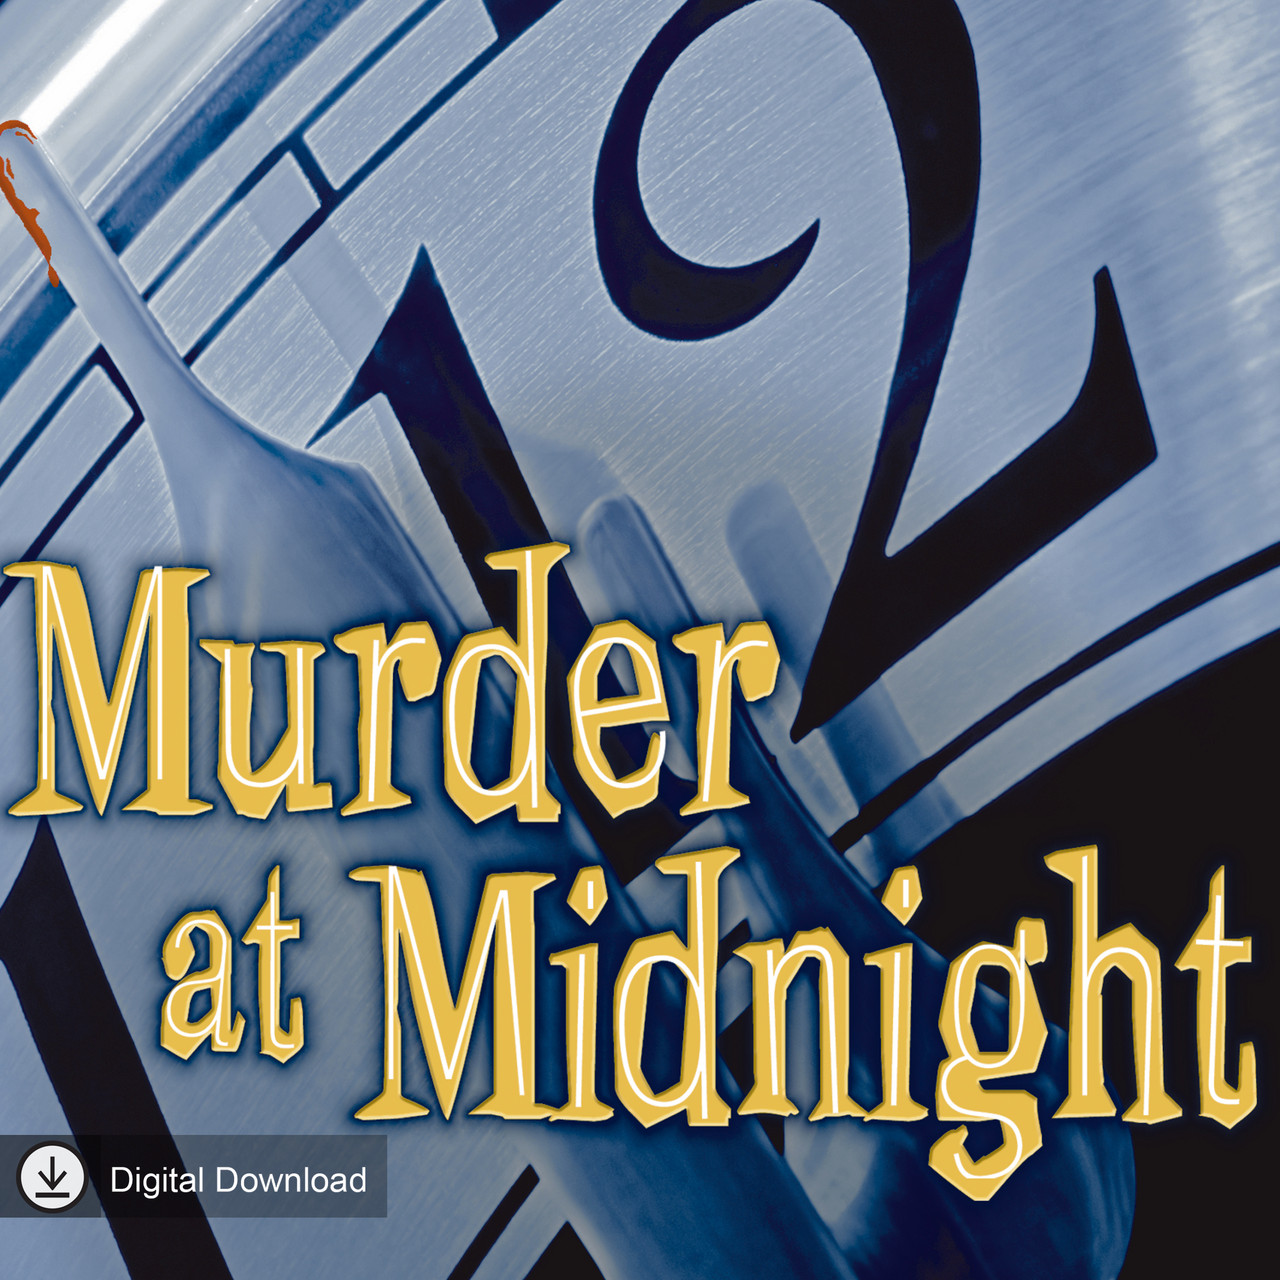 Murder at Midnight (MP3 Download)